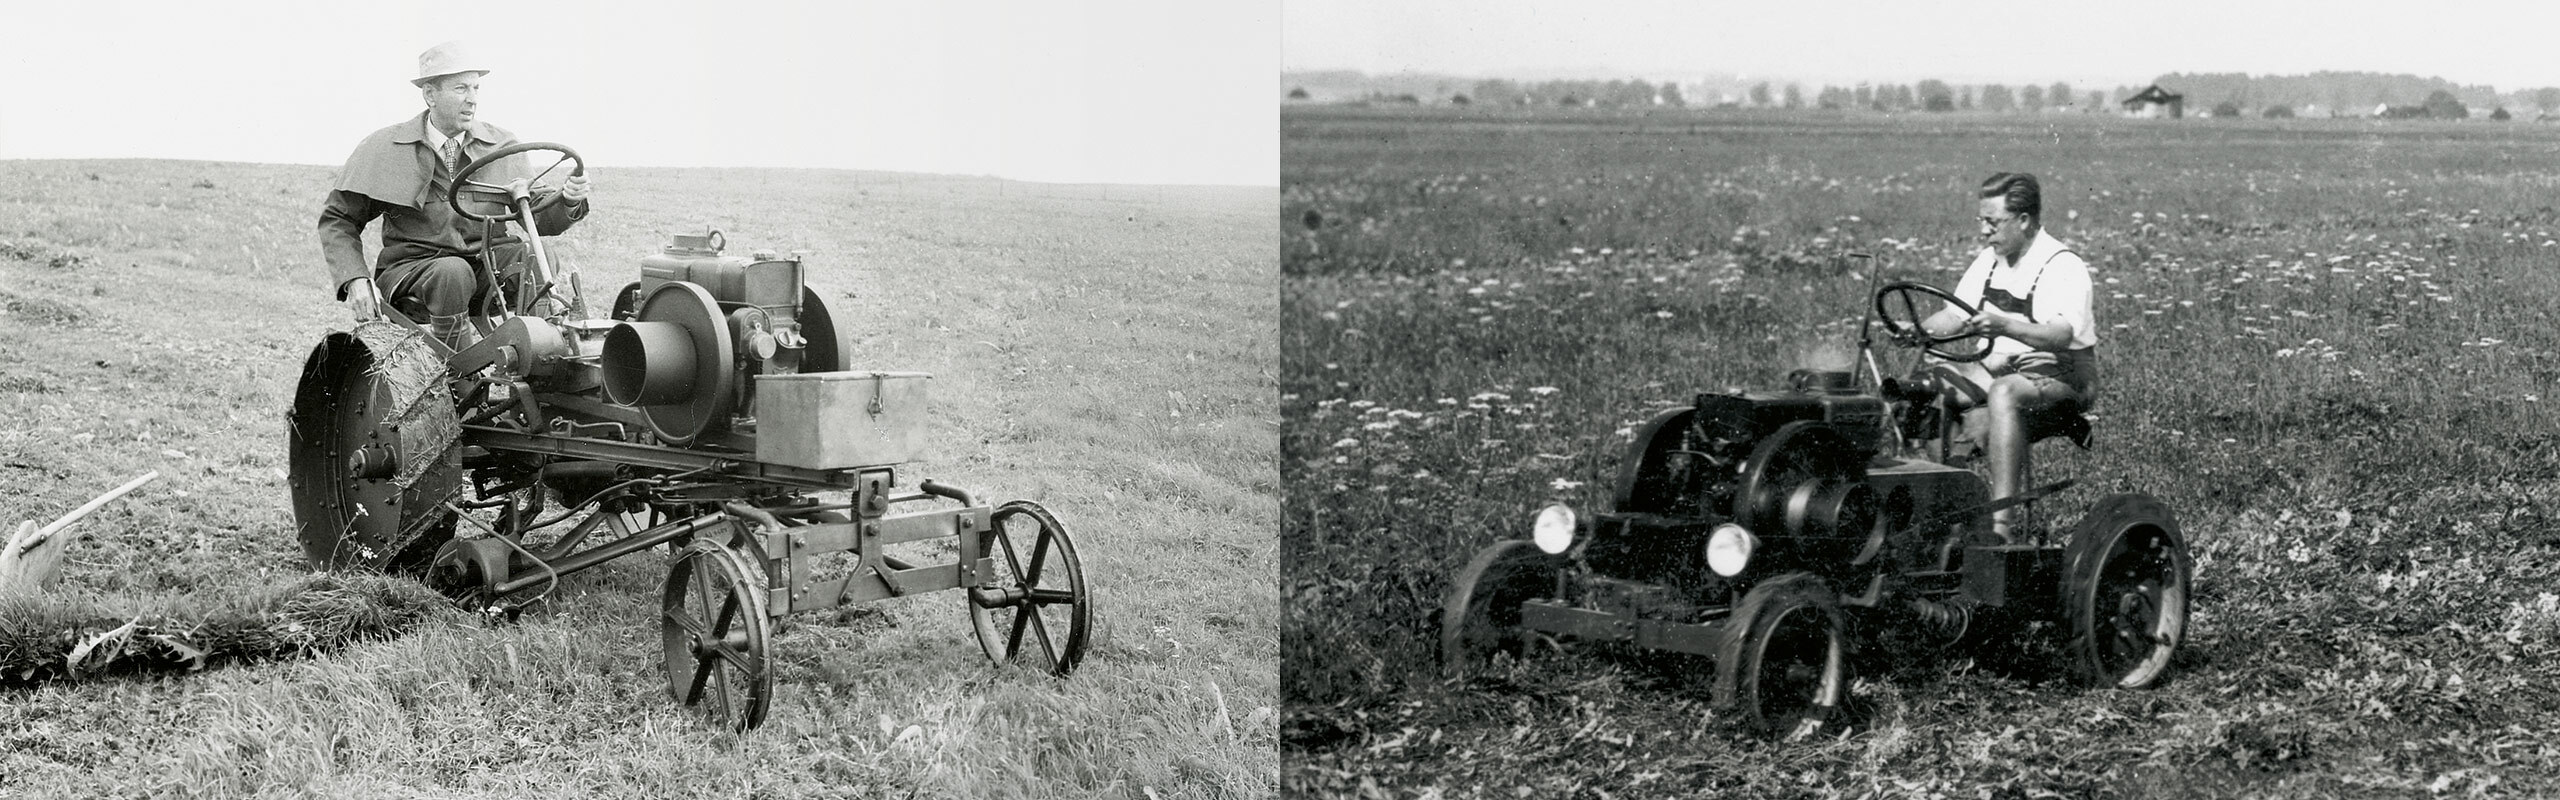 Zwei Landwirte fahren mit zwei alten Fendt Traktoren auf der Wiese.